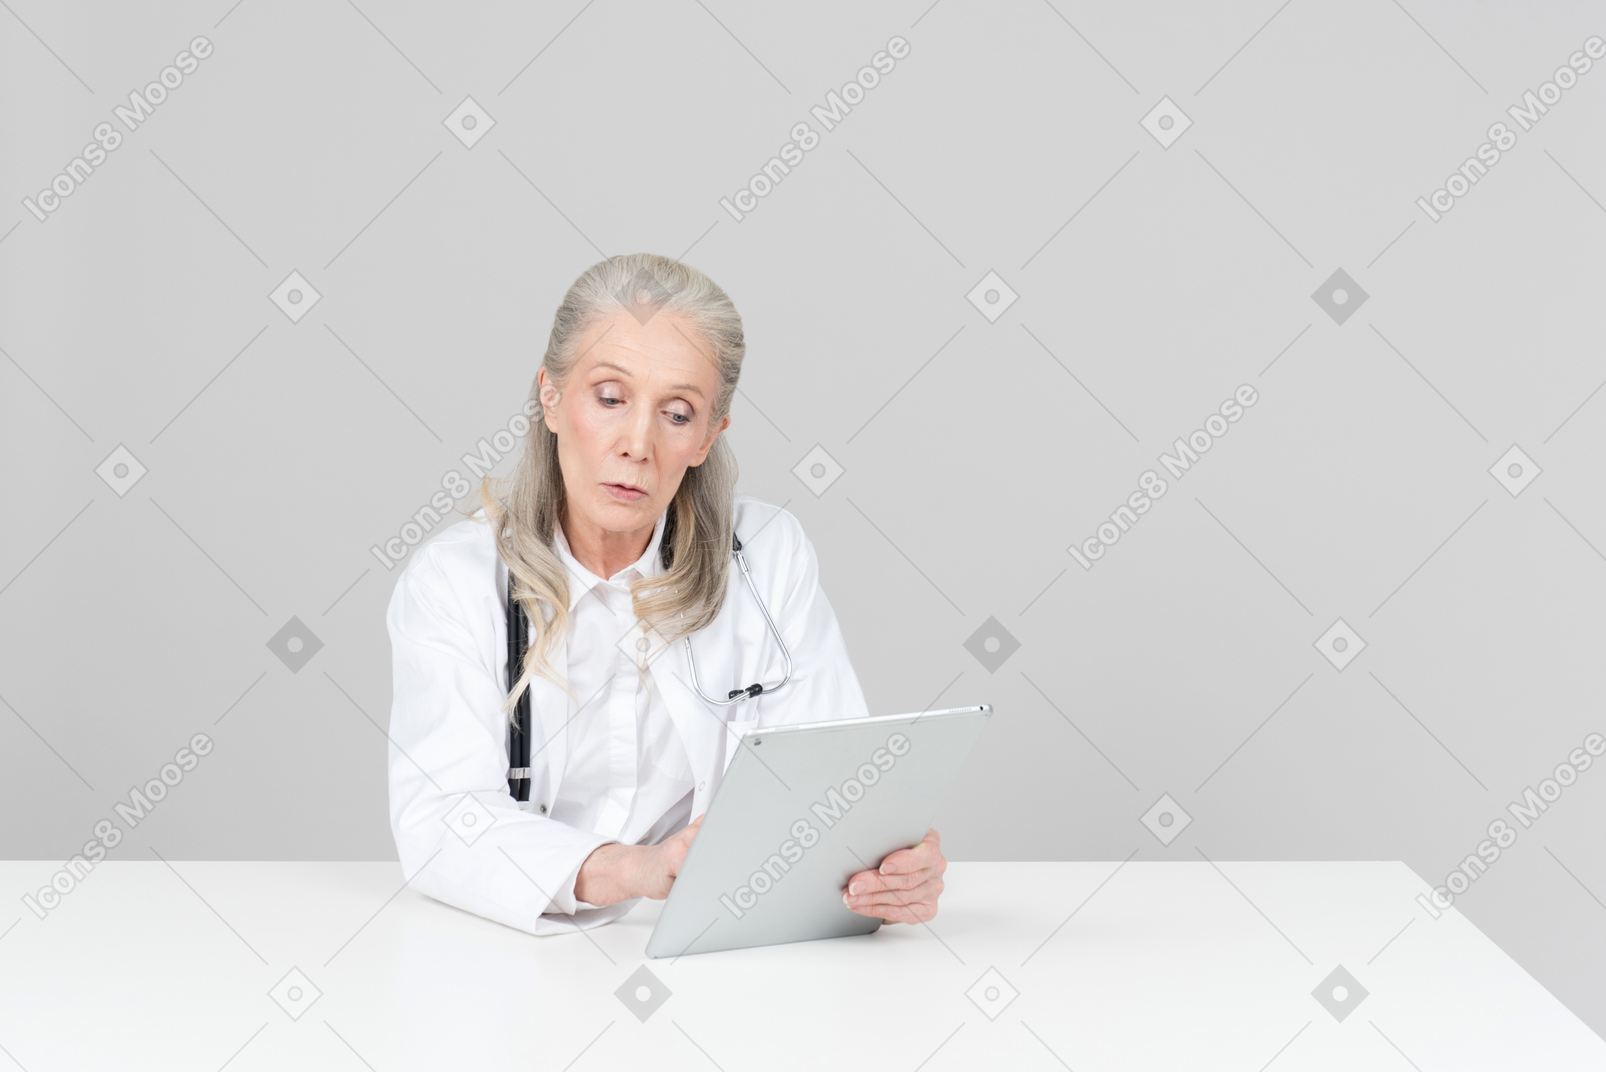 Doctora de edad trabajando en una tableta digital.